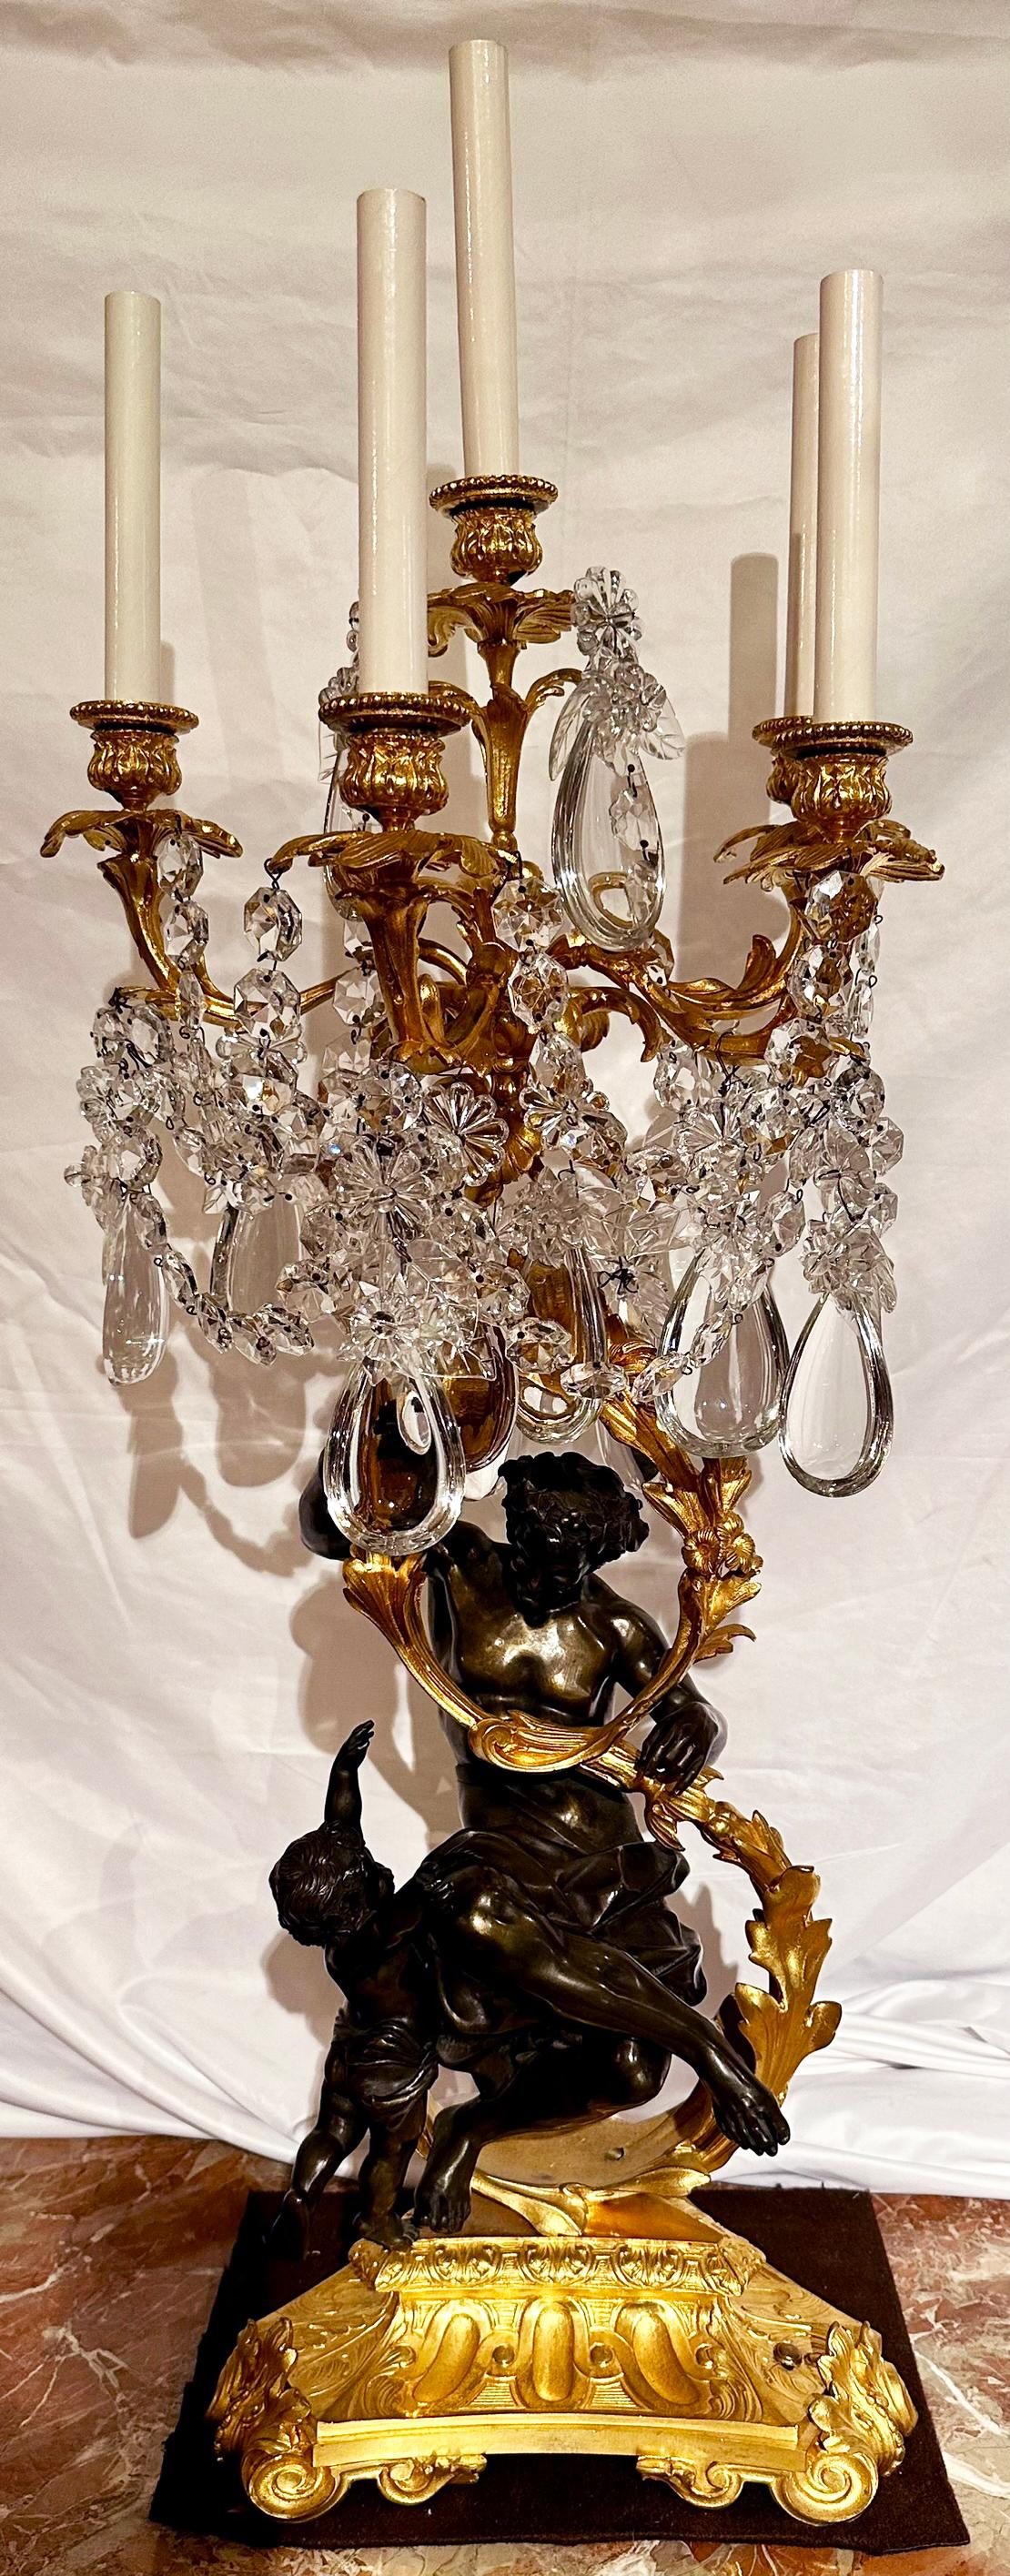 Paire de magnifiques chandeliers anciens français en cristal de Baccarat et bronze doré avec des figures bacchanales en bronze patiné, vers 1860.